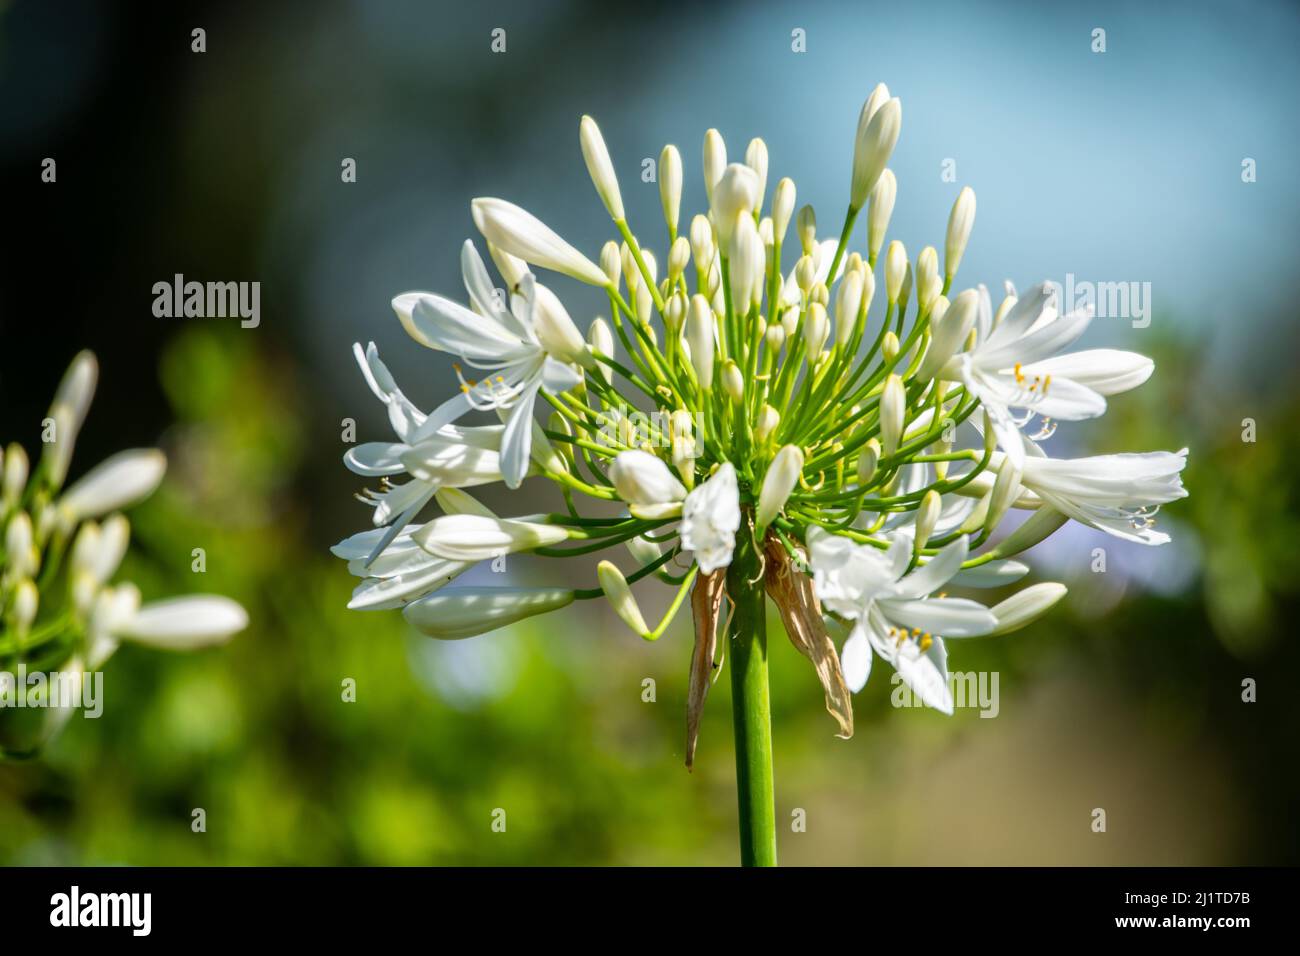 Primer plano de Agapanthus Blanco con floraciones comenzando a abrirse. Foto de stock